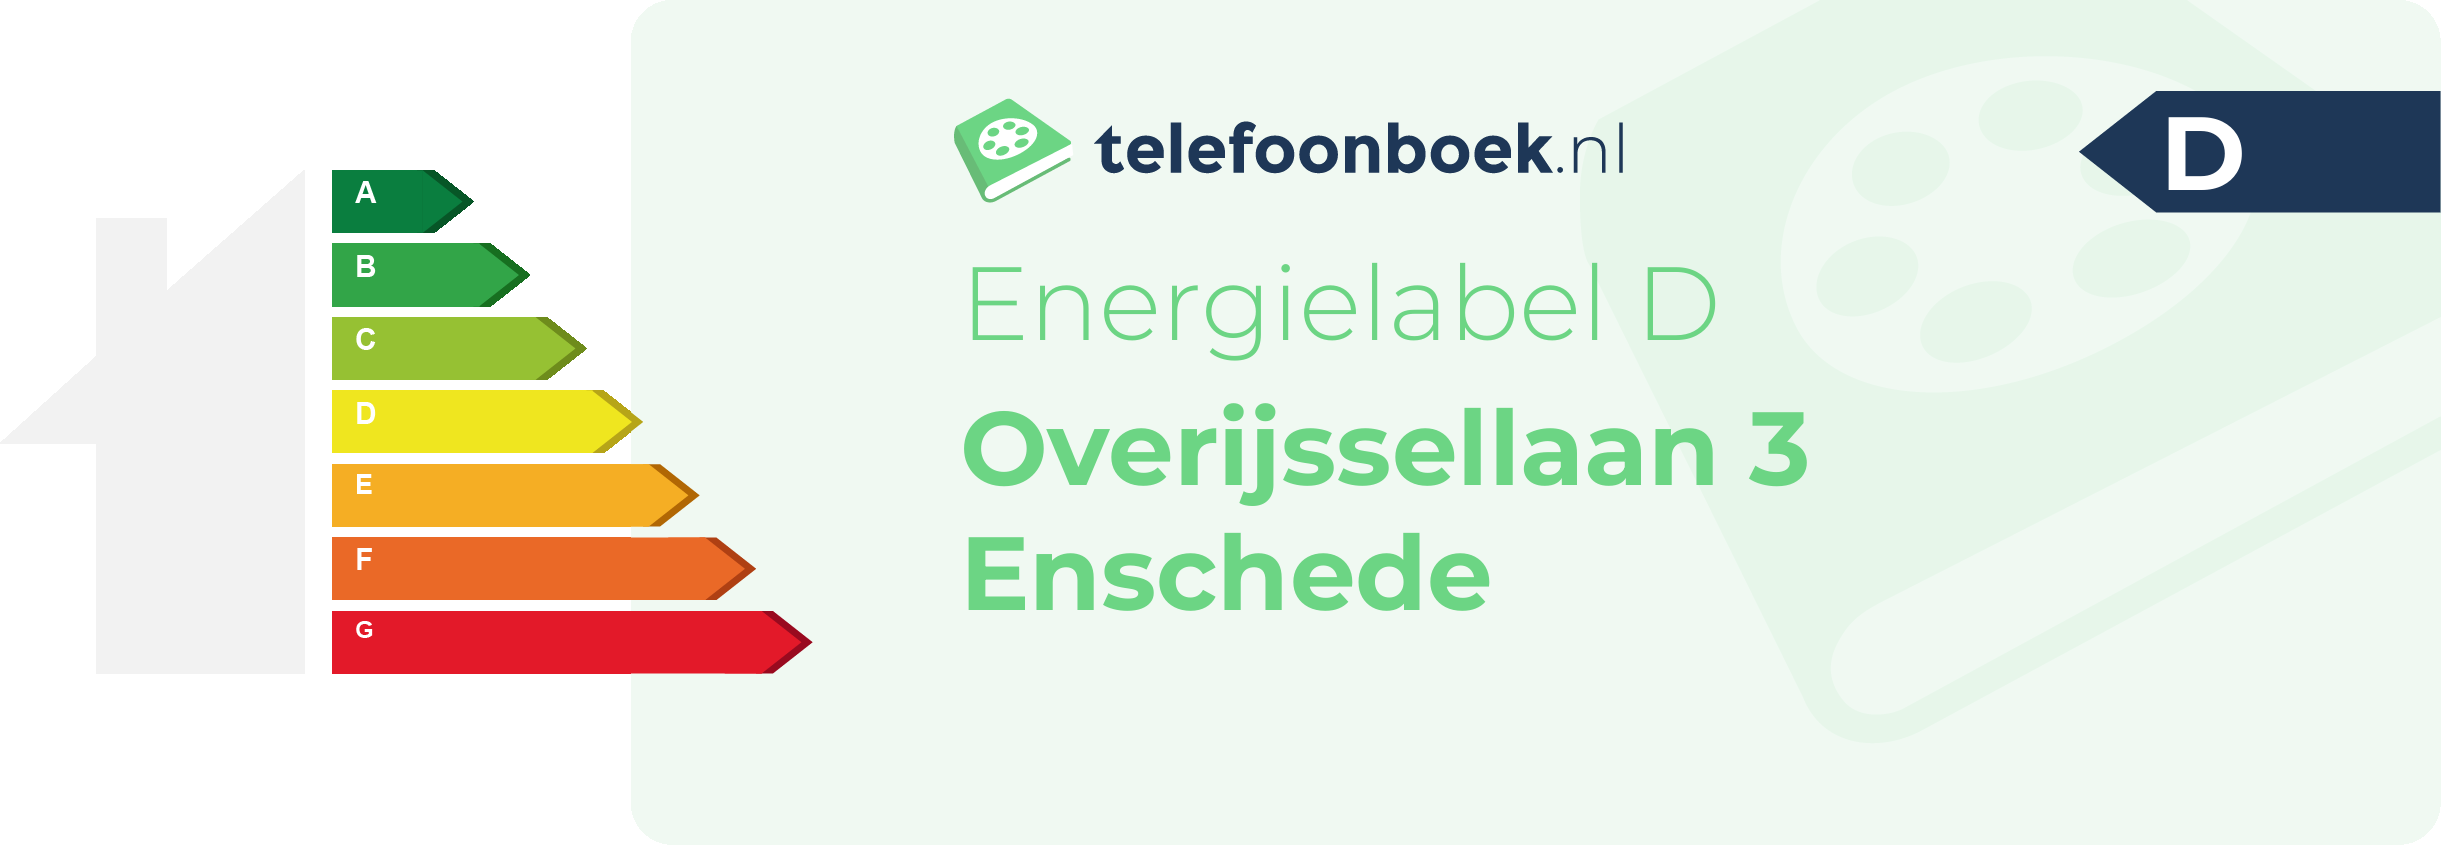 Energielabel Overijssellaan 3 Enschede